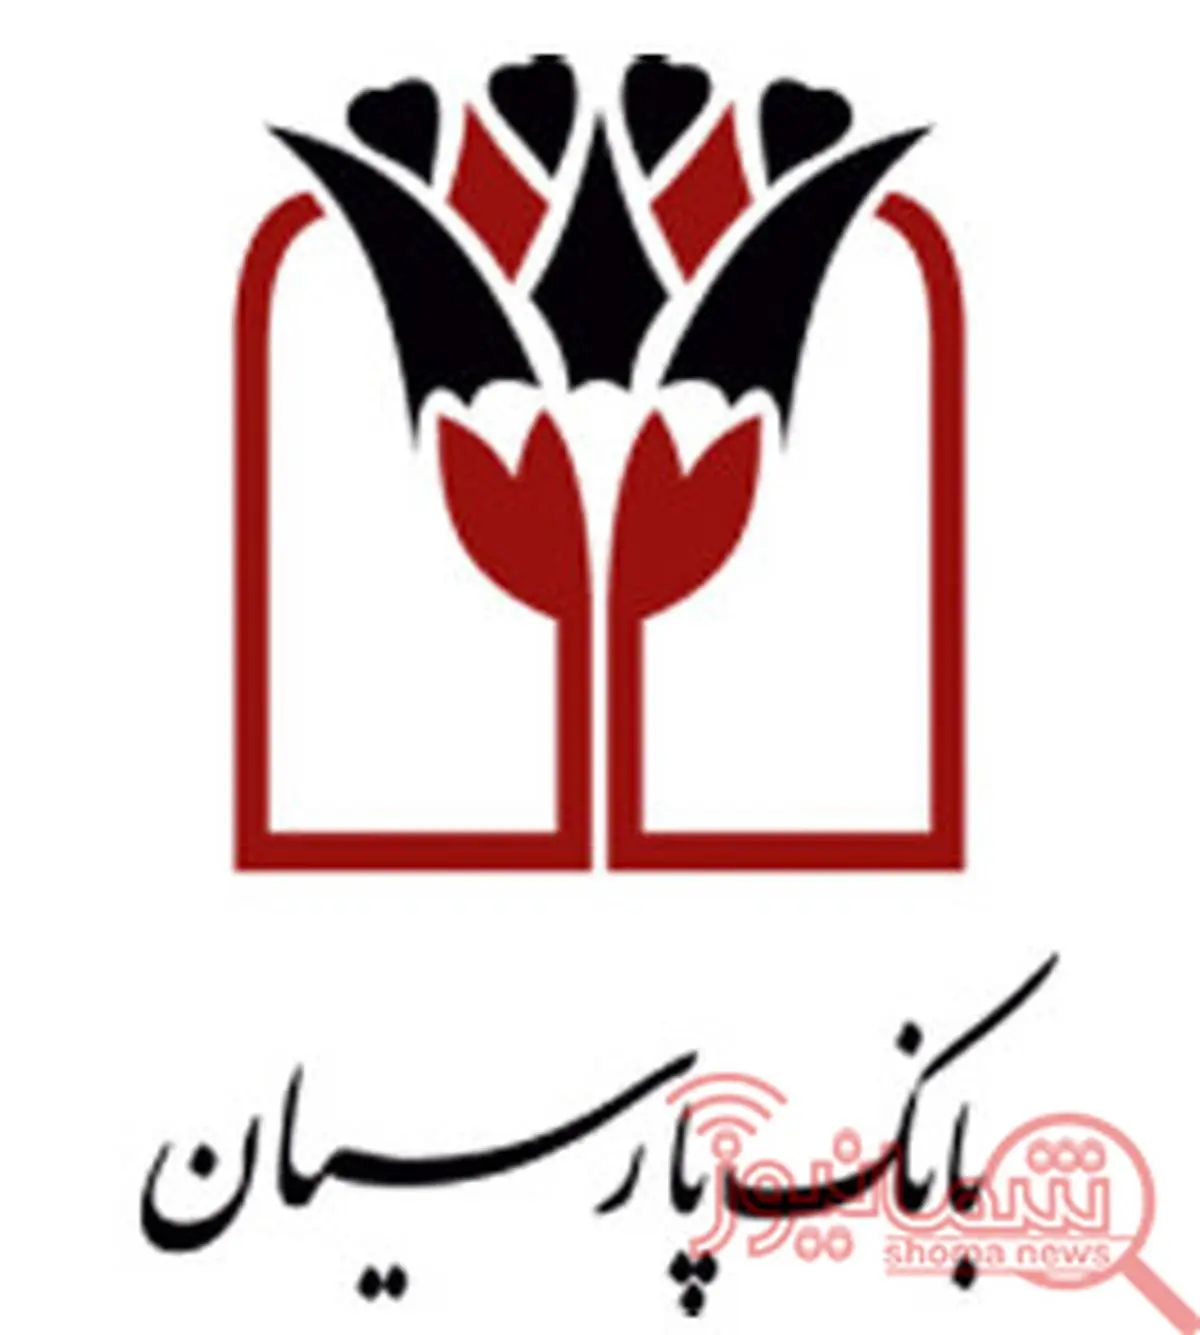 افتتاح 316 مین شعبه بانک پارسیان در قشم